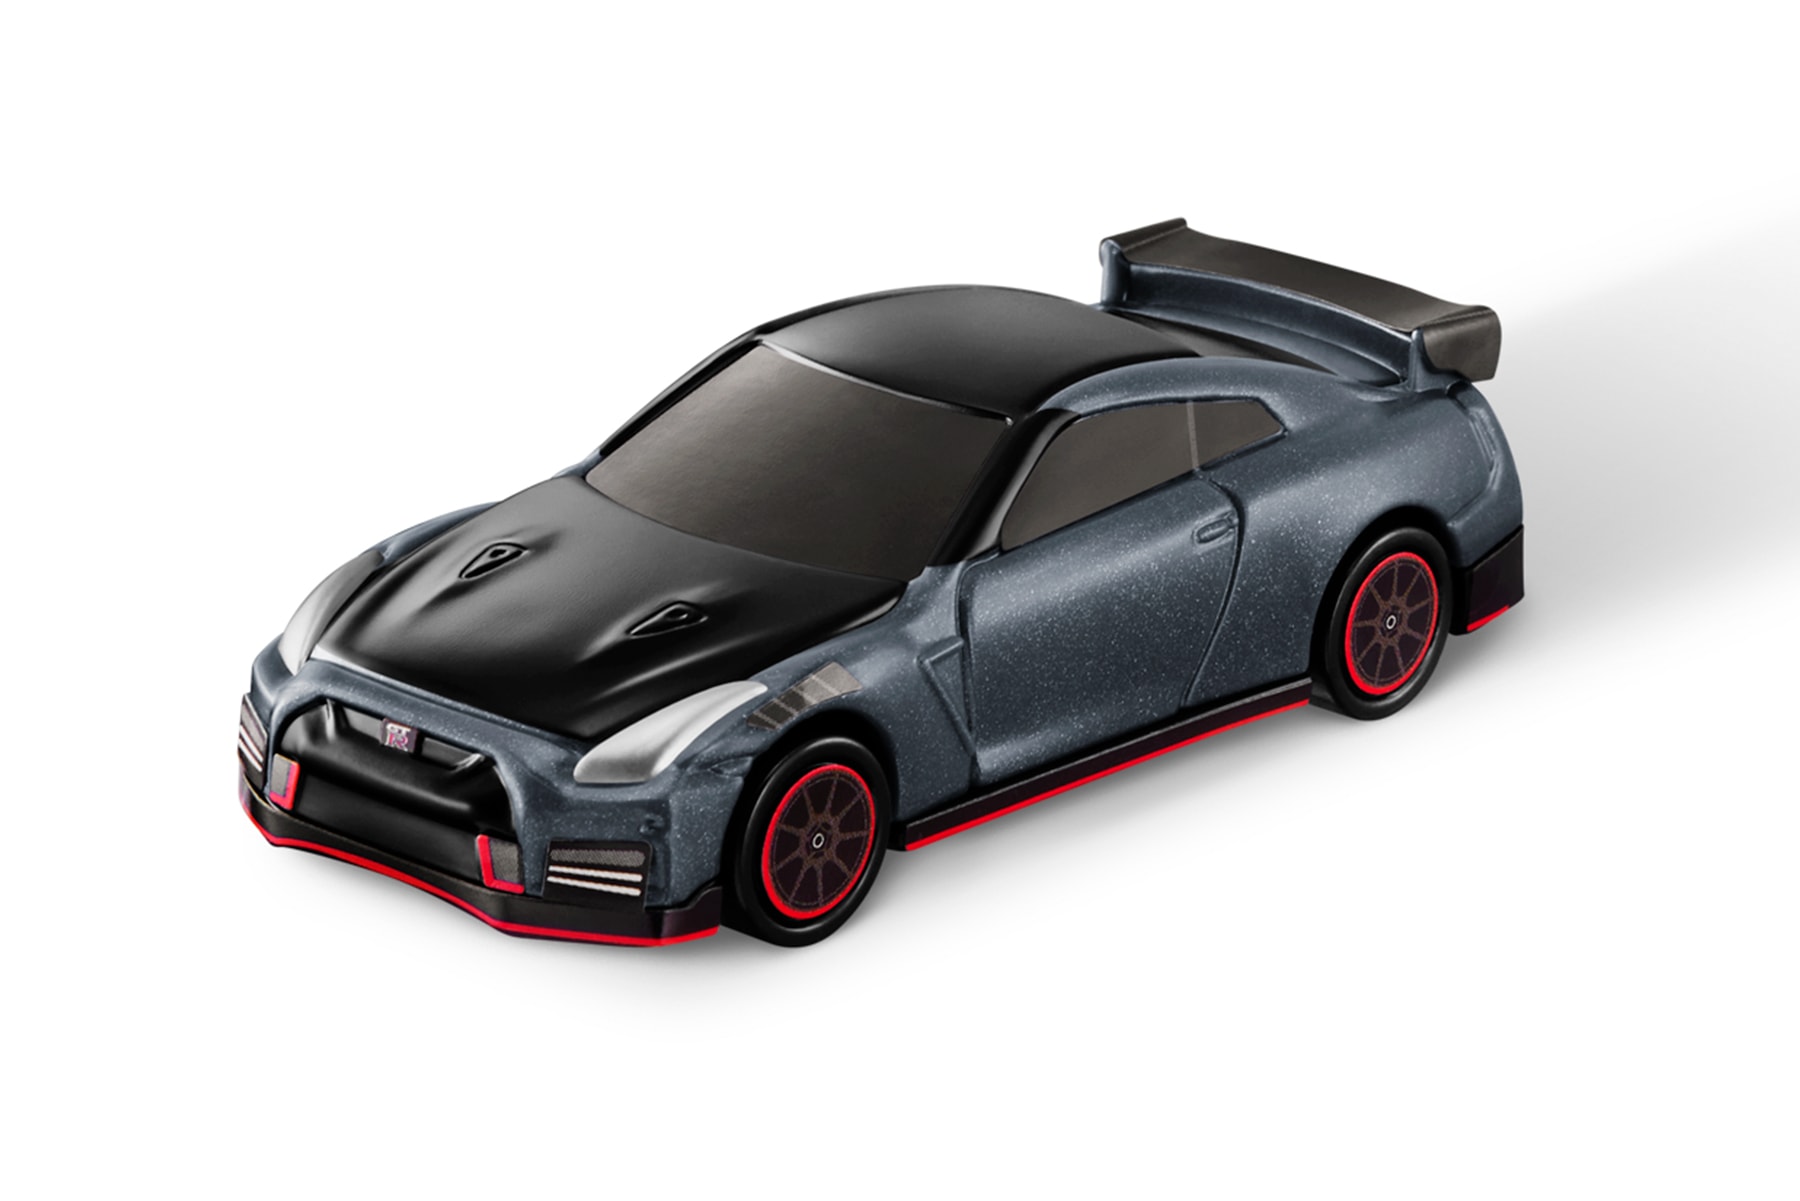 맥도날드 x 닛산이 함께 선보이는 해피밀 세트 장난감은? 2022 GT-R 니스모, 자동차 모형, 토미카